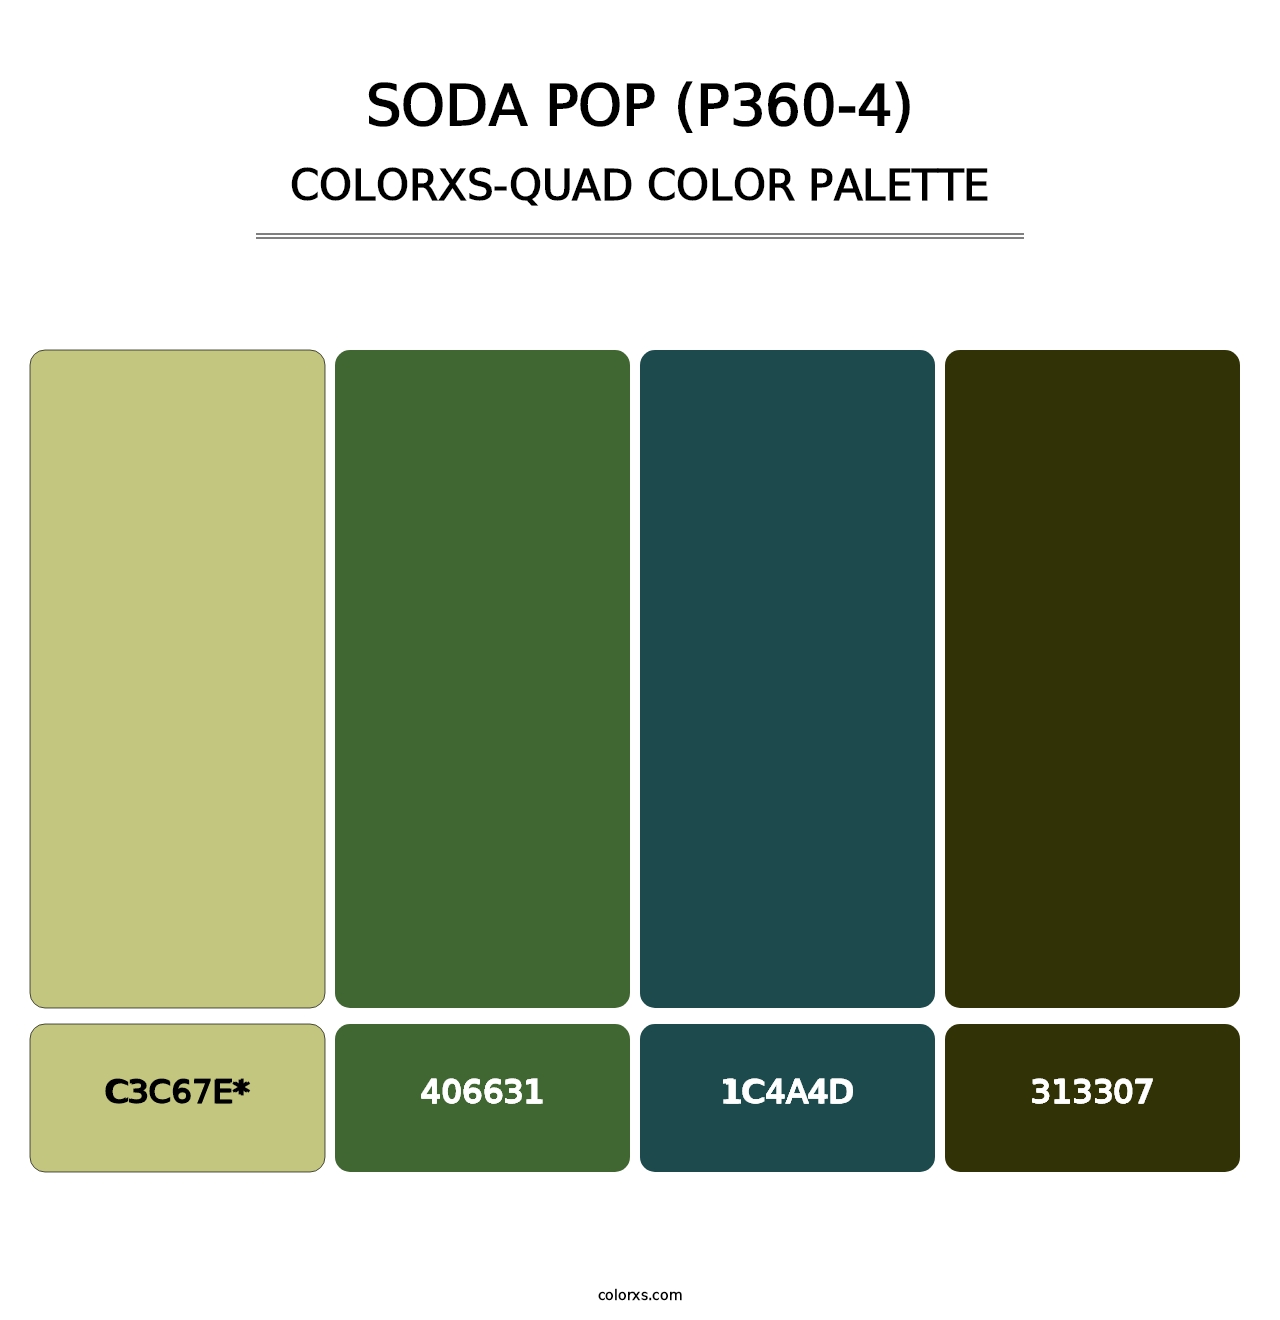 Soda Pop (P360-4) - Colorxs Quad Palette